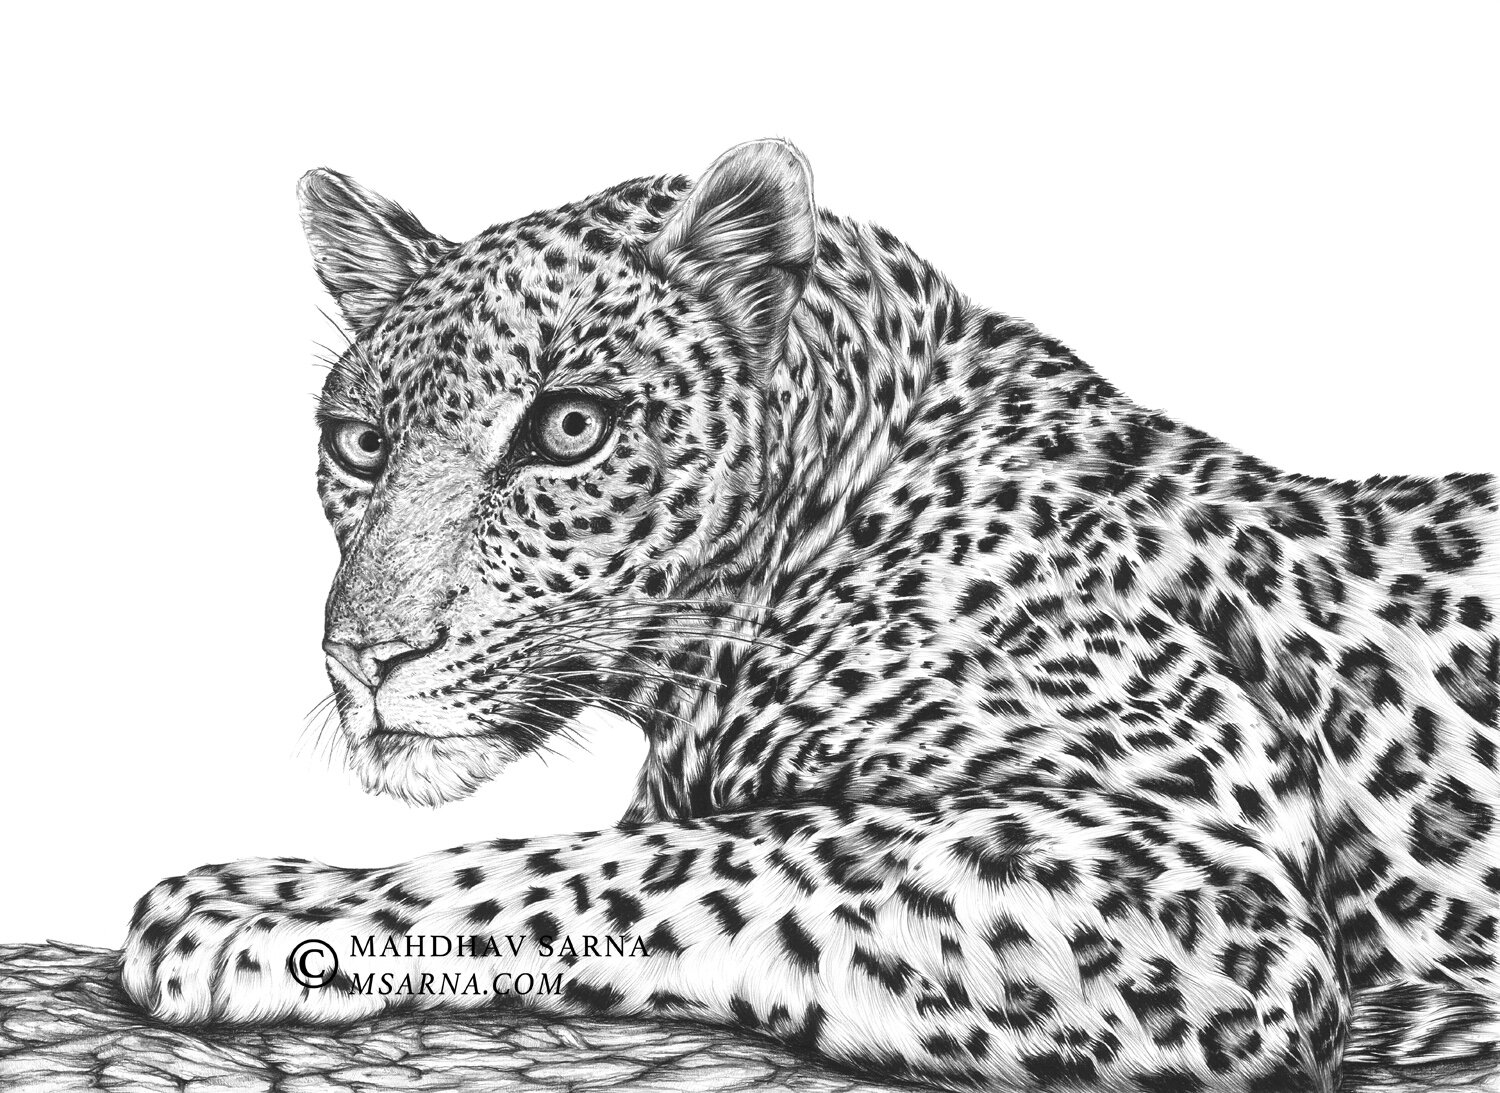 leopard pencil drawing pepr wildlife art mahdhav sarna 01.jpg